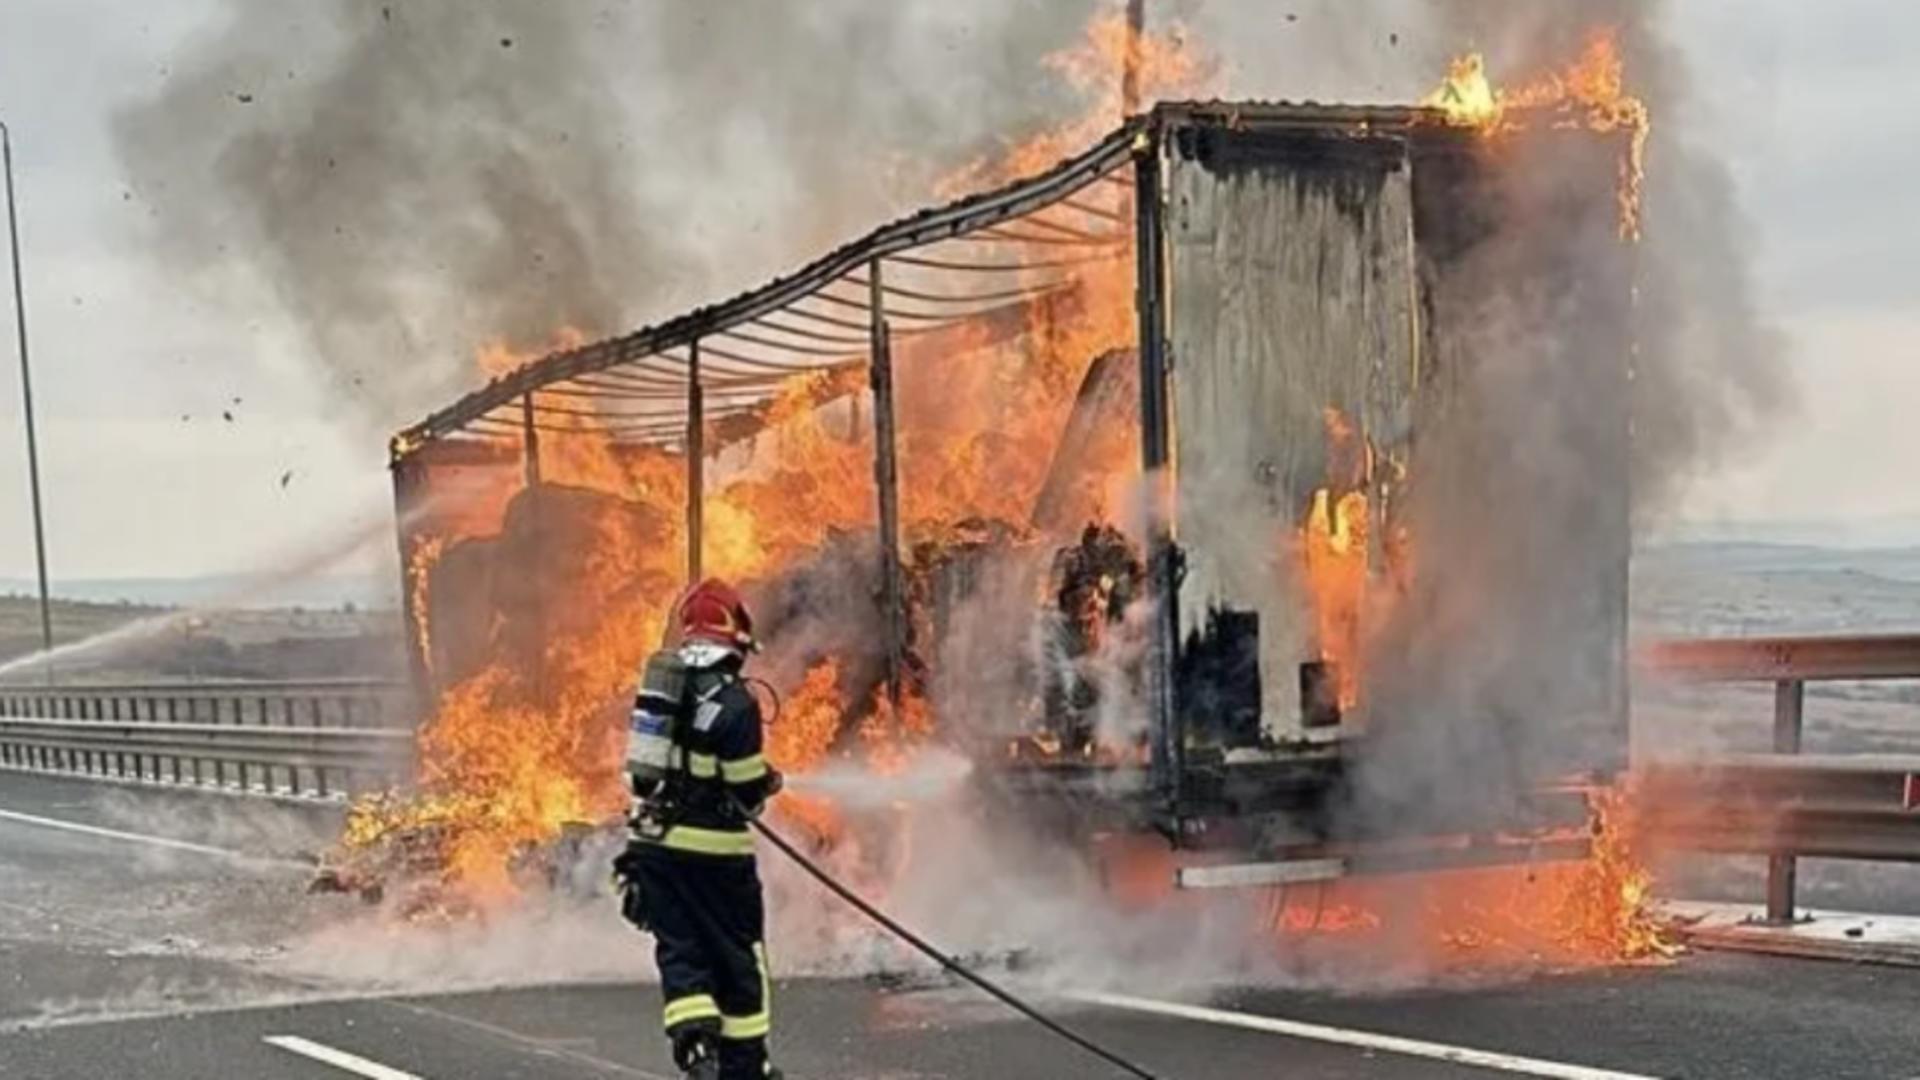 Un camion încărcat cu carton presat a ars ca o torță pe A1, în județul Sibiu. Imagini șocante/ Captură foto sibiuindependent.ro